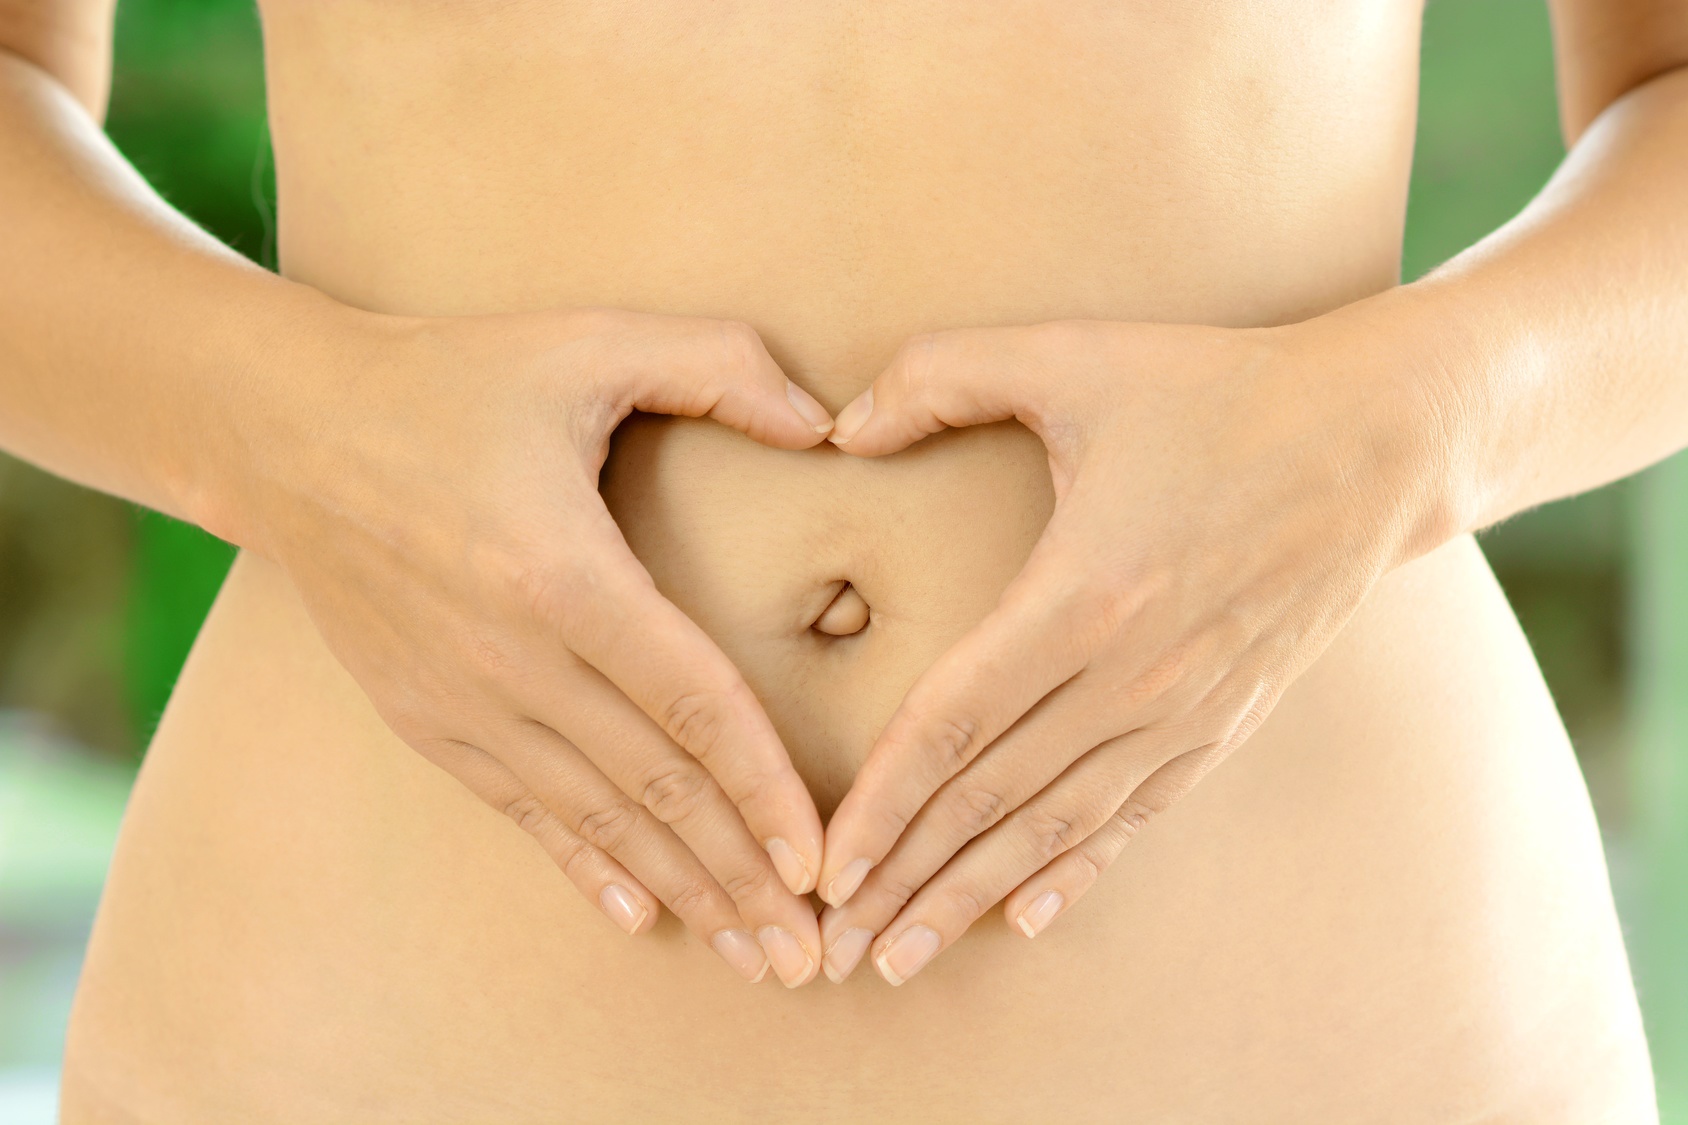 Le mésentère est un organe du système digestif reliant l’intestin aux parois de l’abdomen. © Dan Race, Fotolia